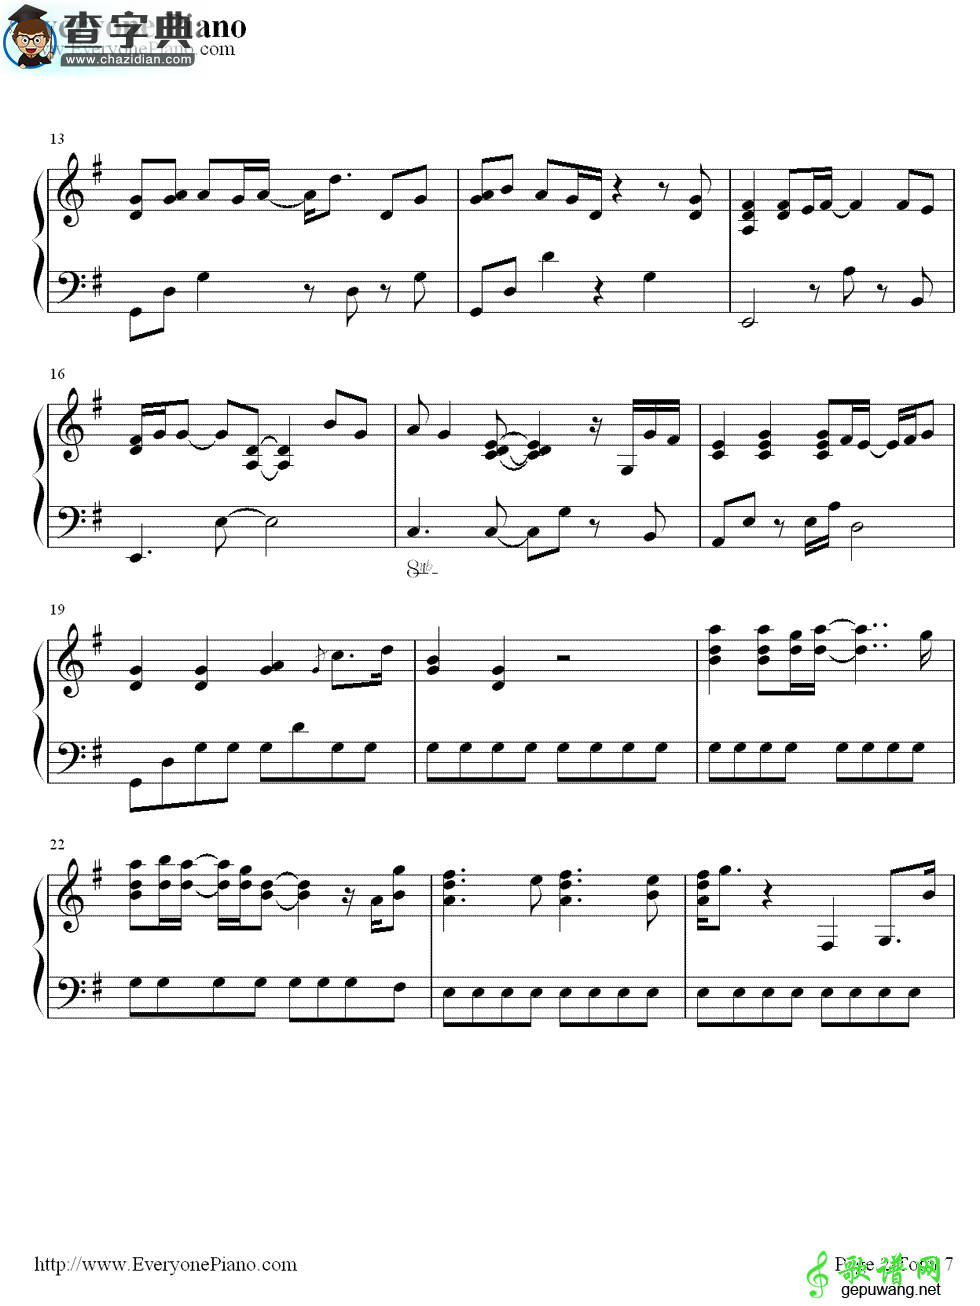 【粉雪钢琴谱】《一公升的眼泪》插曲钢琴简谱